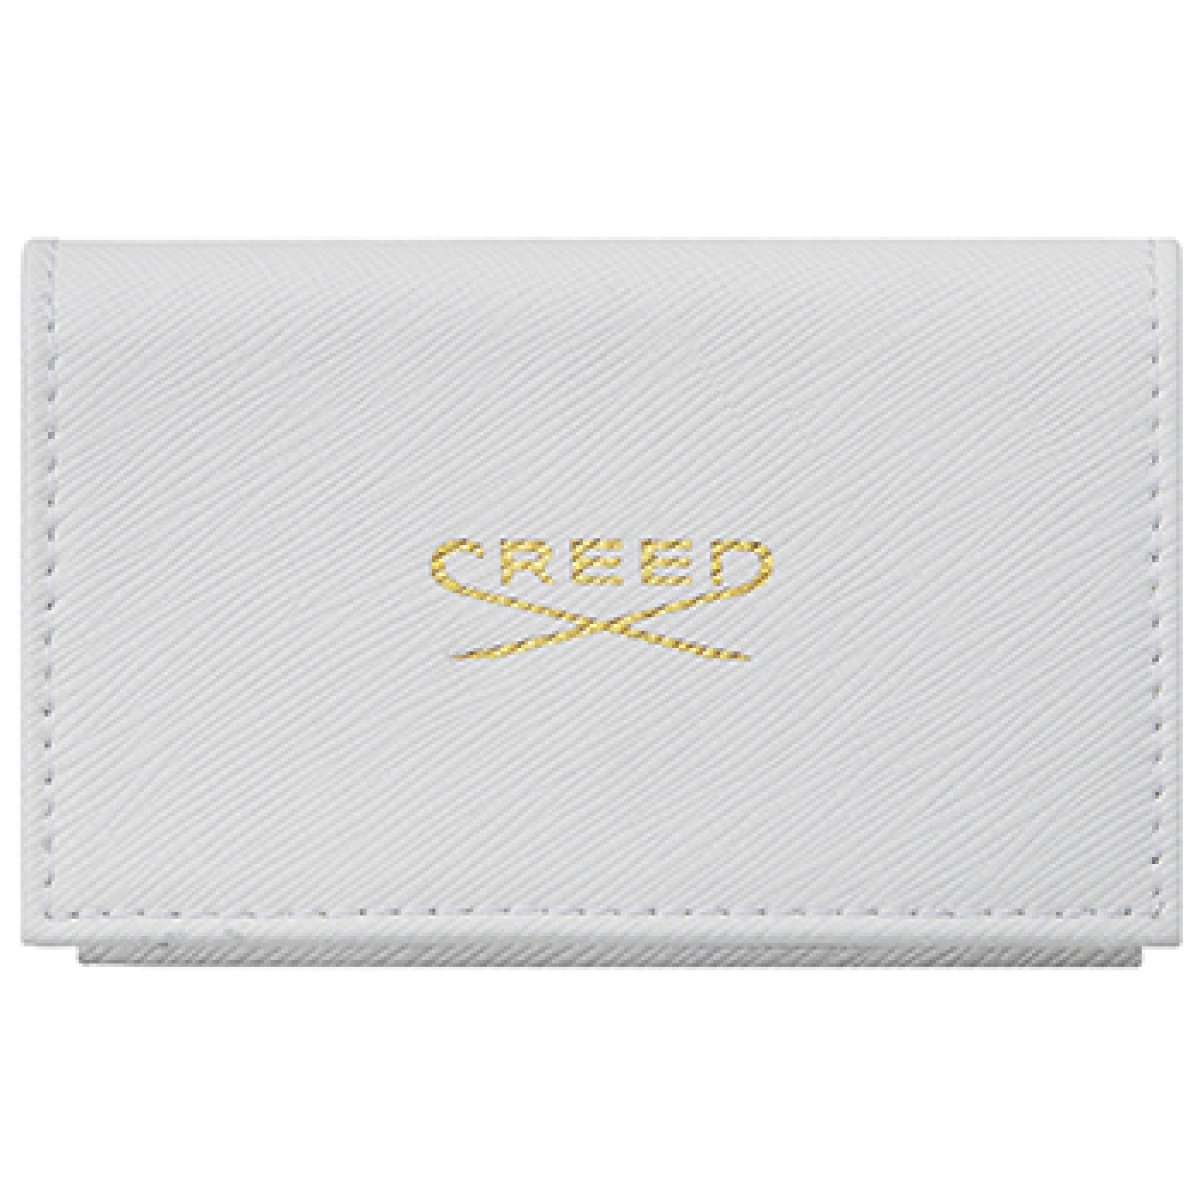 Creed - Bőr pénztárca + exkluzív parfümminta szett (8 x 1.7 ml) - női, 8 x  1.7 ml eau de parfum